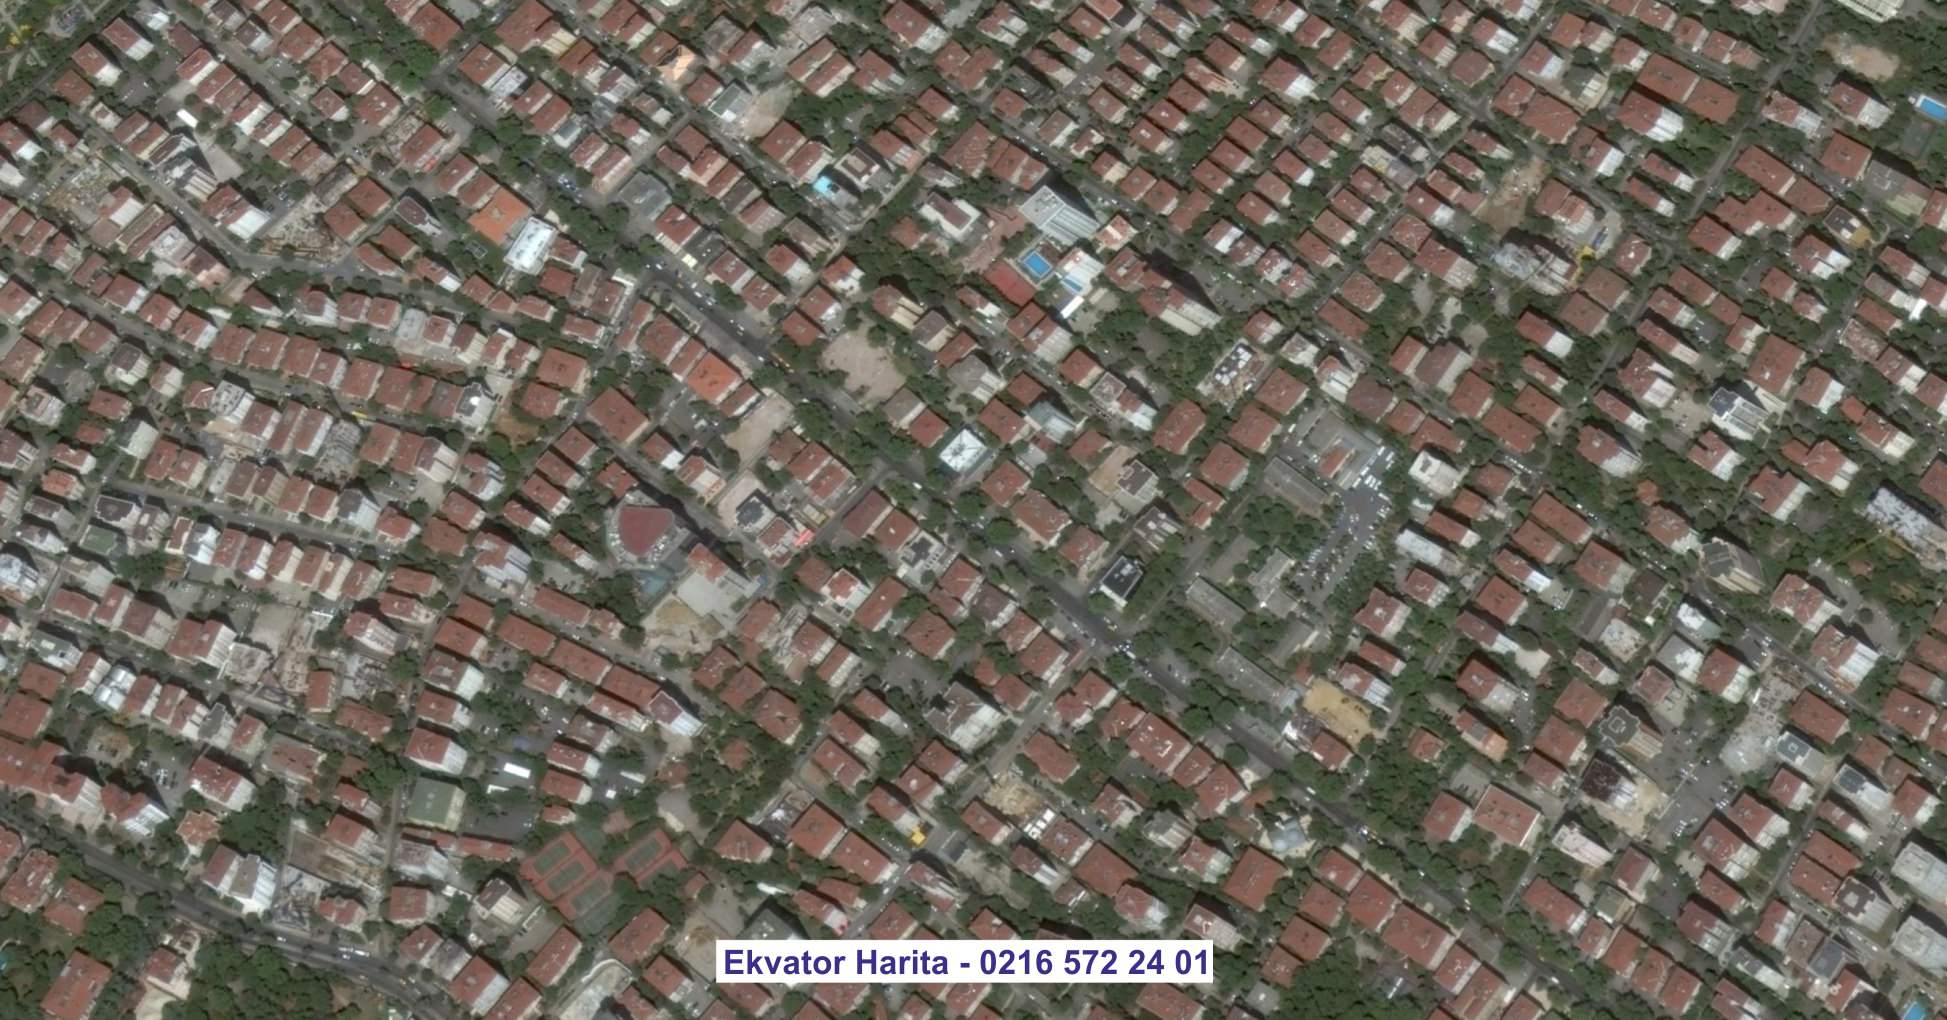 Foça Uydu Görüntüsü Örnek Fotoğrafı